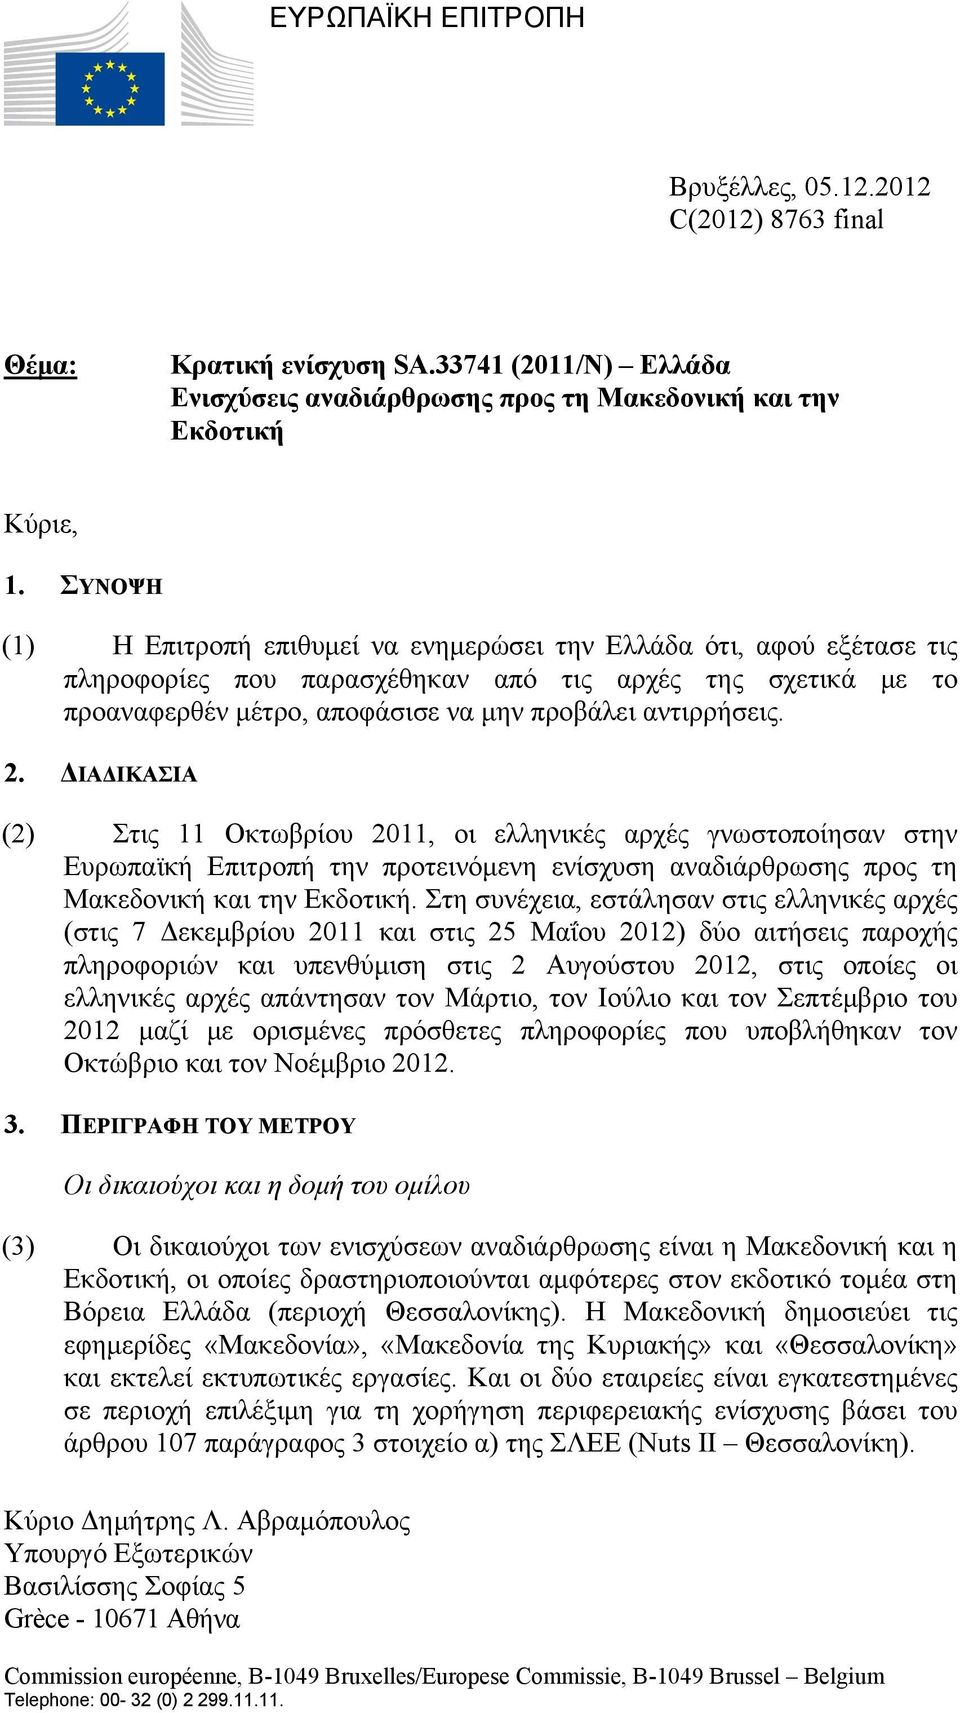 ΔΙΑΔΙΚΑΣΙΑ (2) Στις 11 Οκτωβρίου 2011, οι ελληνικές αρχές γνωστοποίησαν στην Ευρωπαϊκή Επιτροπή την προτεινόμενη ενίσχυση αναδιάρθρωσης προς τη Μακεδονική και την Εκδοτική.